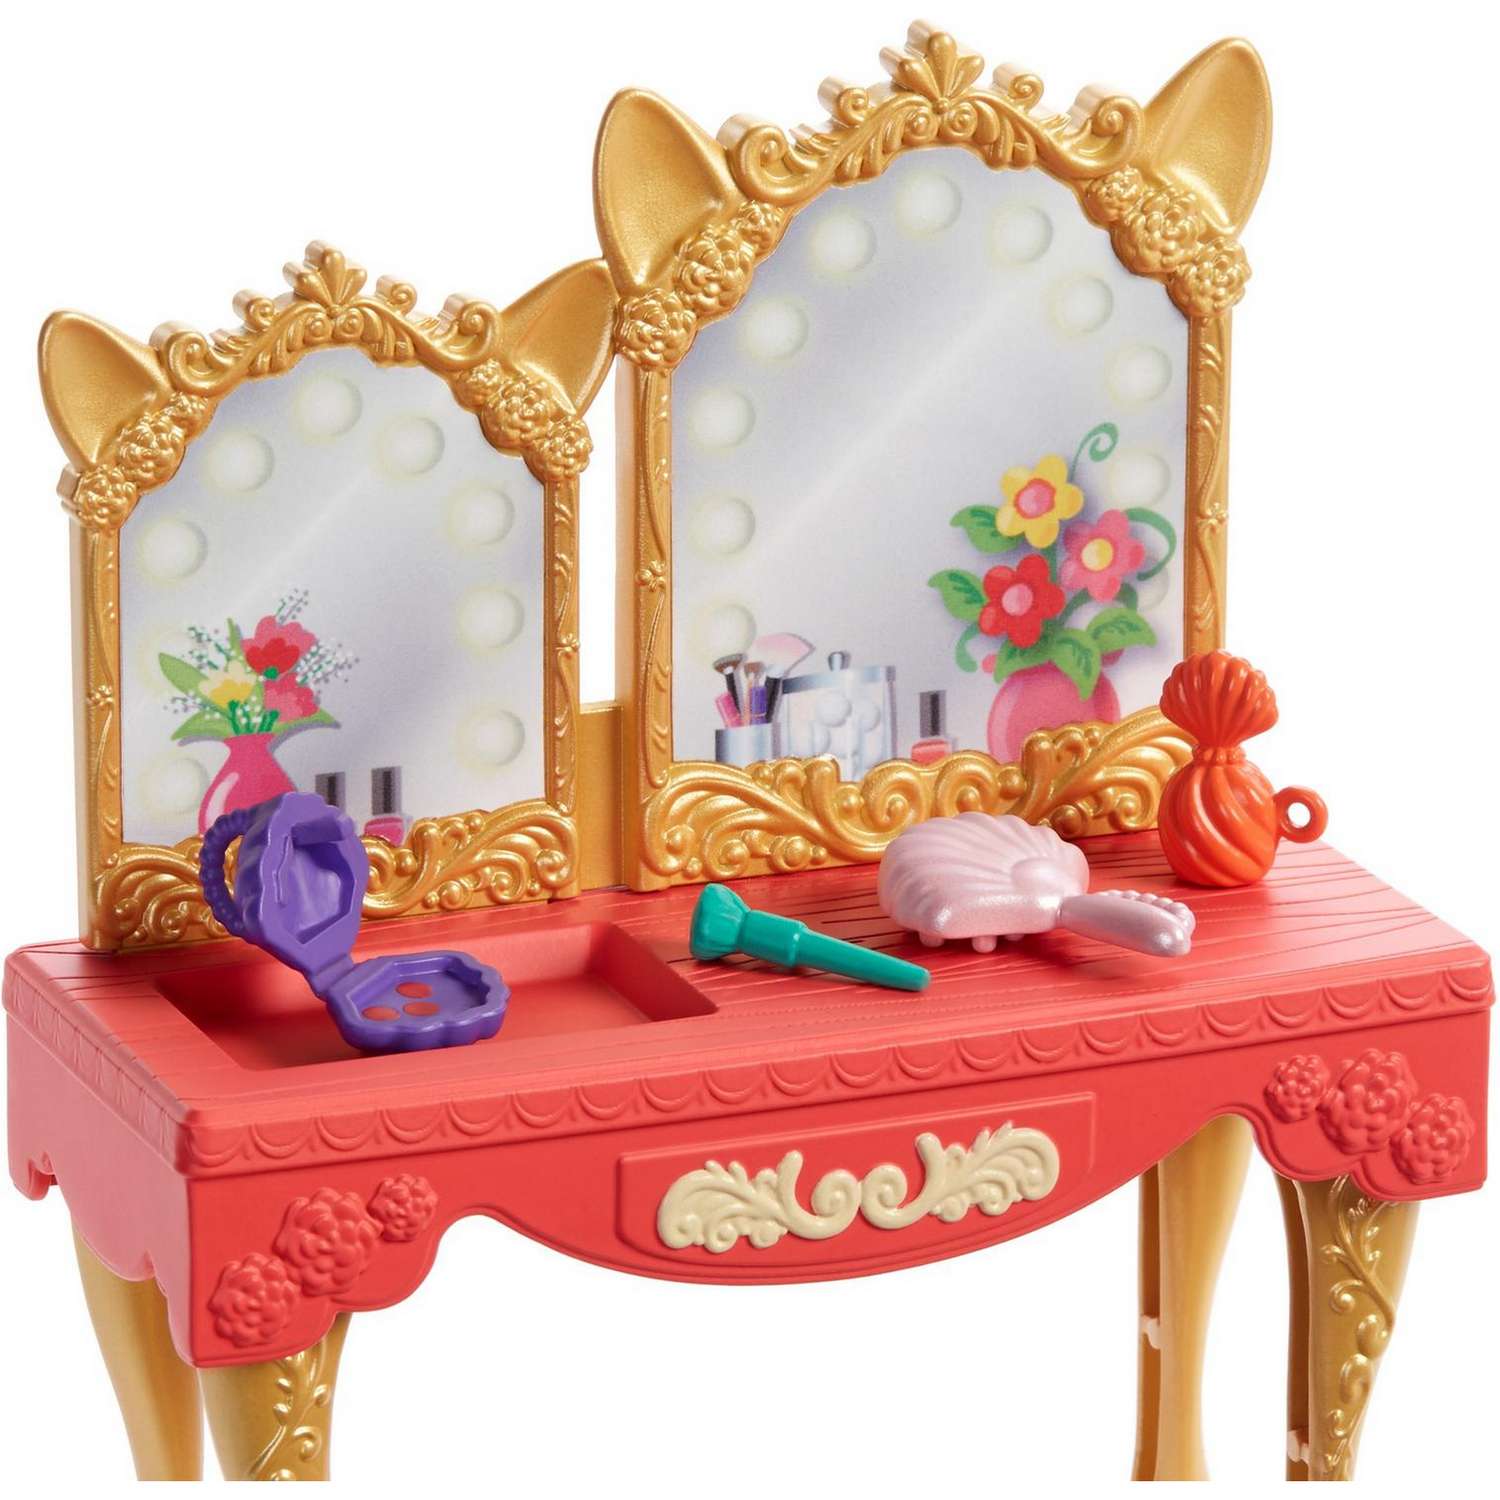 Набор игровой Enchantimals кукла+питомец с аксессуарами Викторианский туалетный столик GYJ05 GJX35 - фото 5